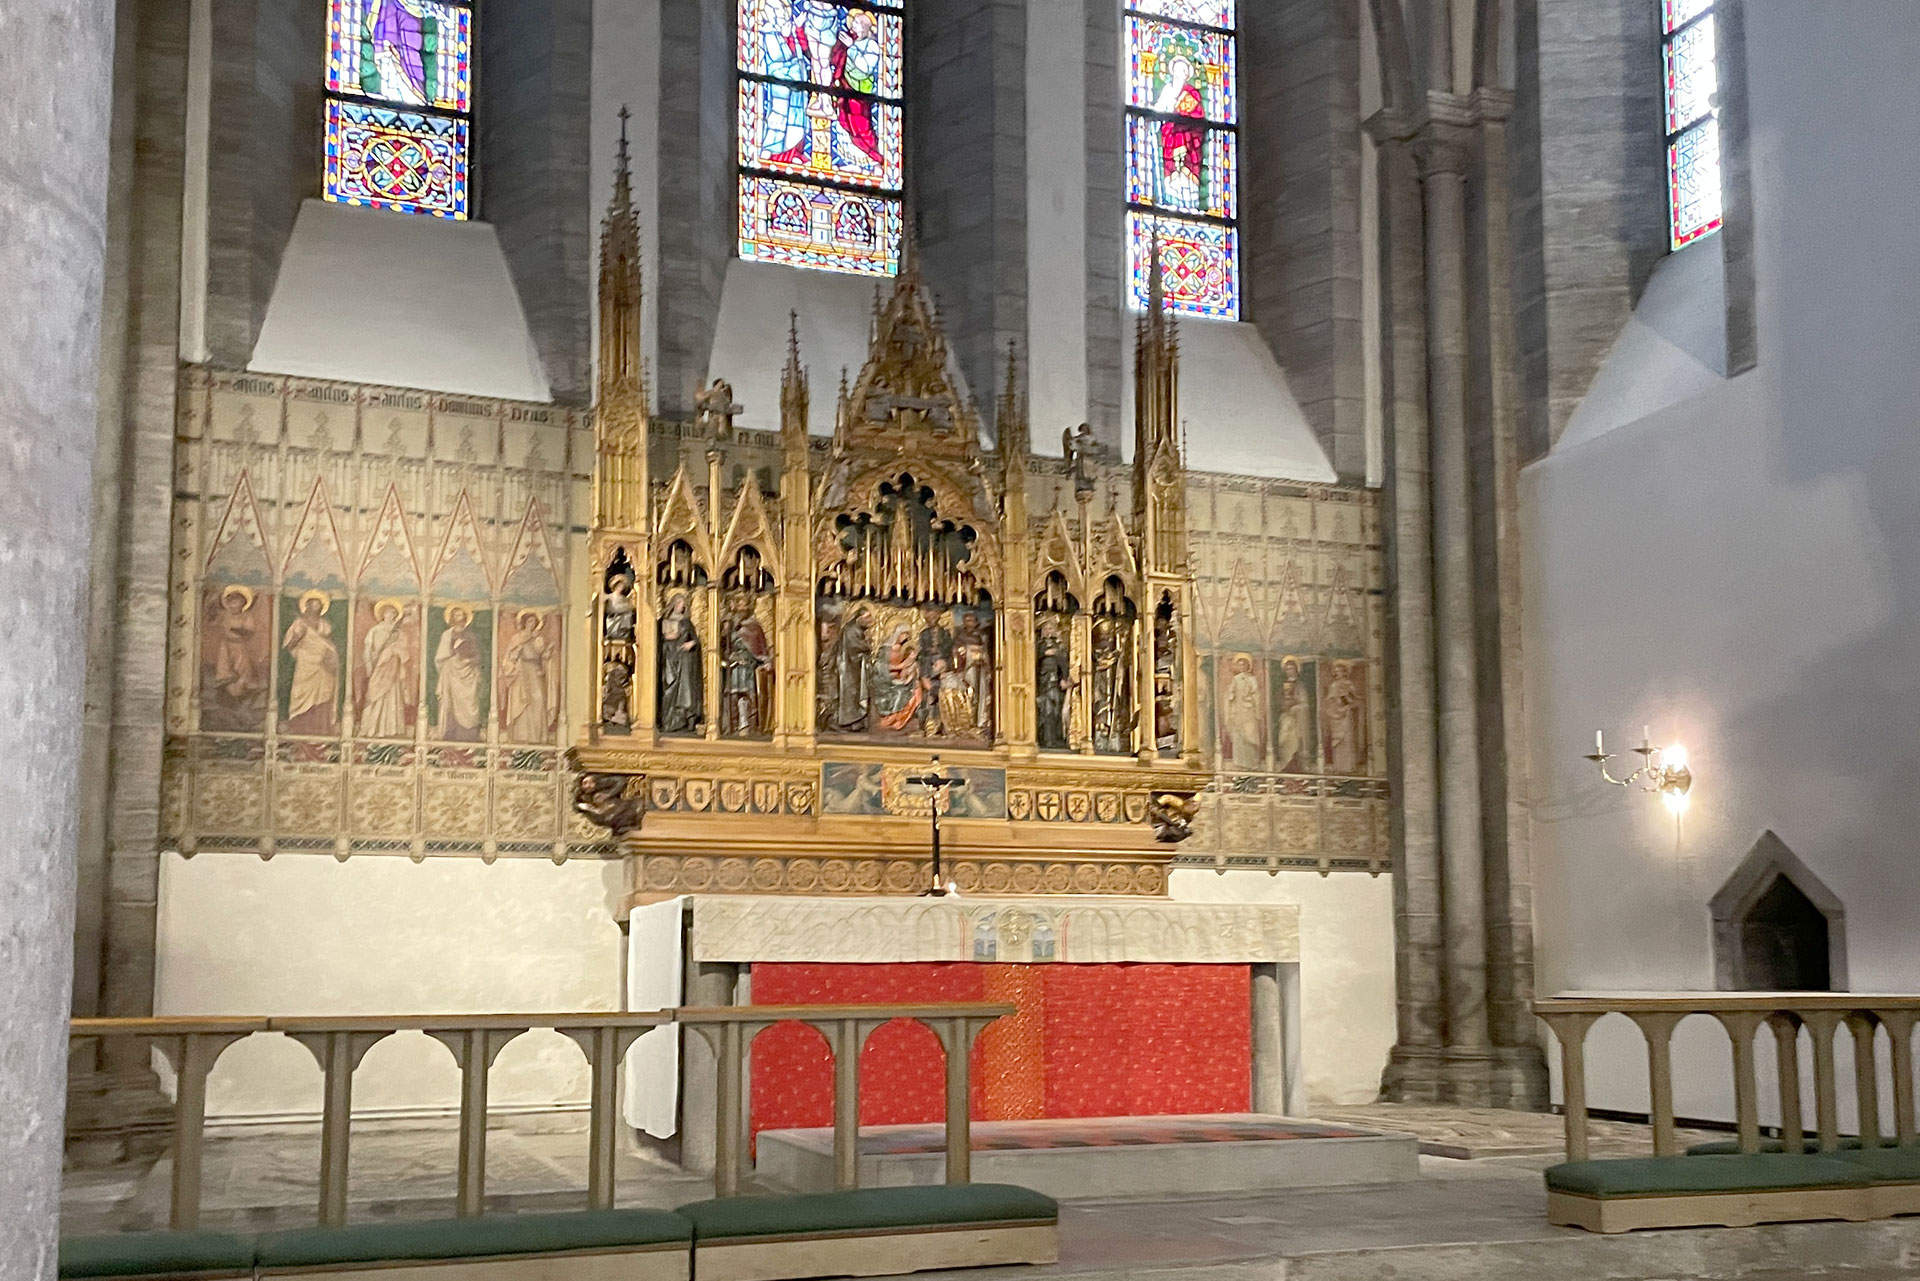 Högaltaret står i koret under de tre blyinfattade fönstren med olika bilder från bibeln